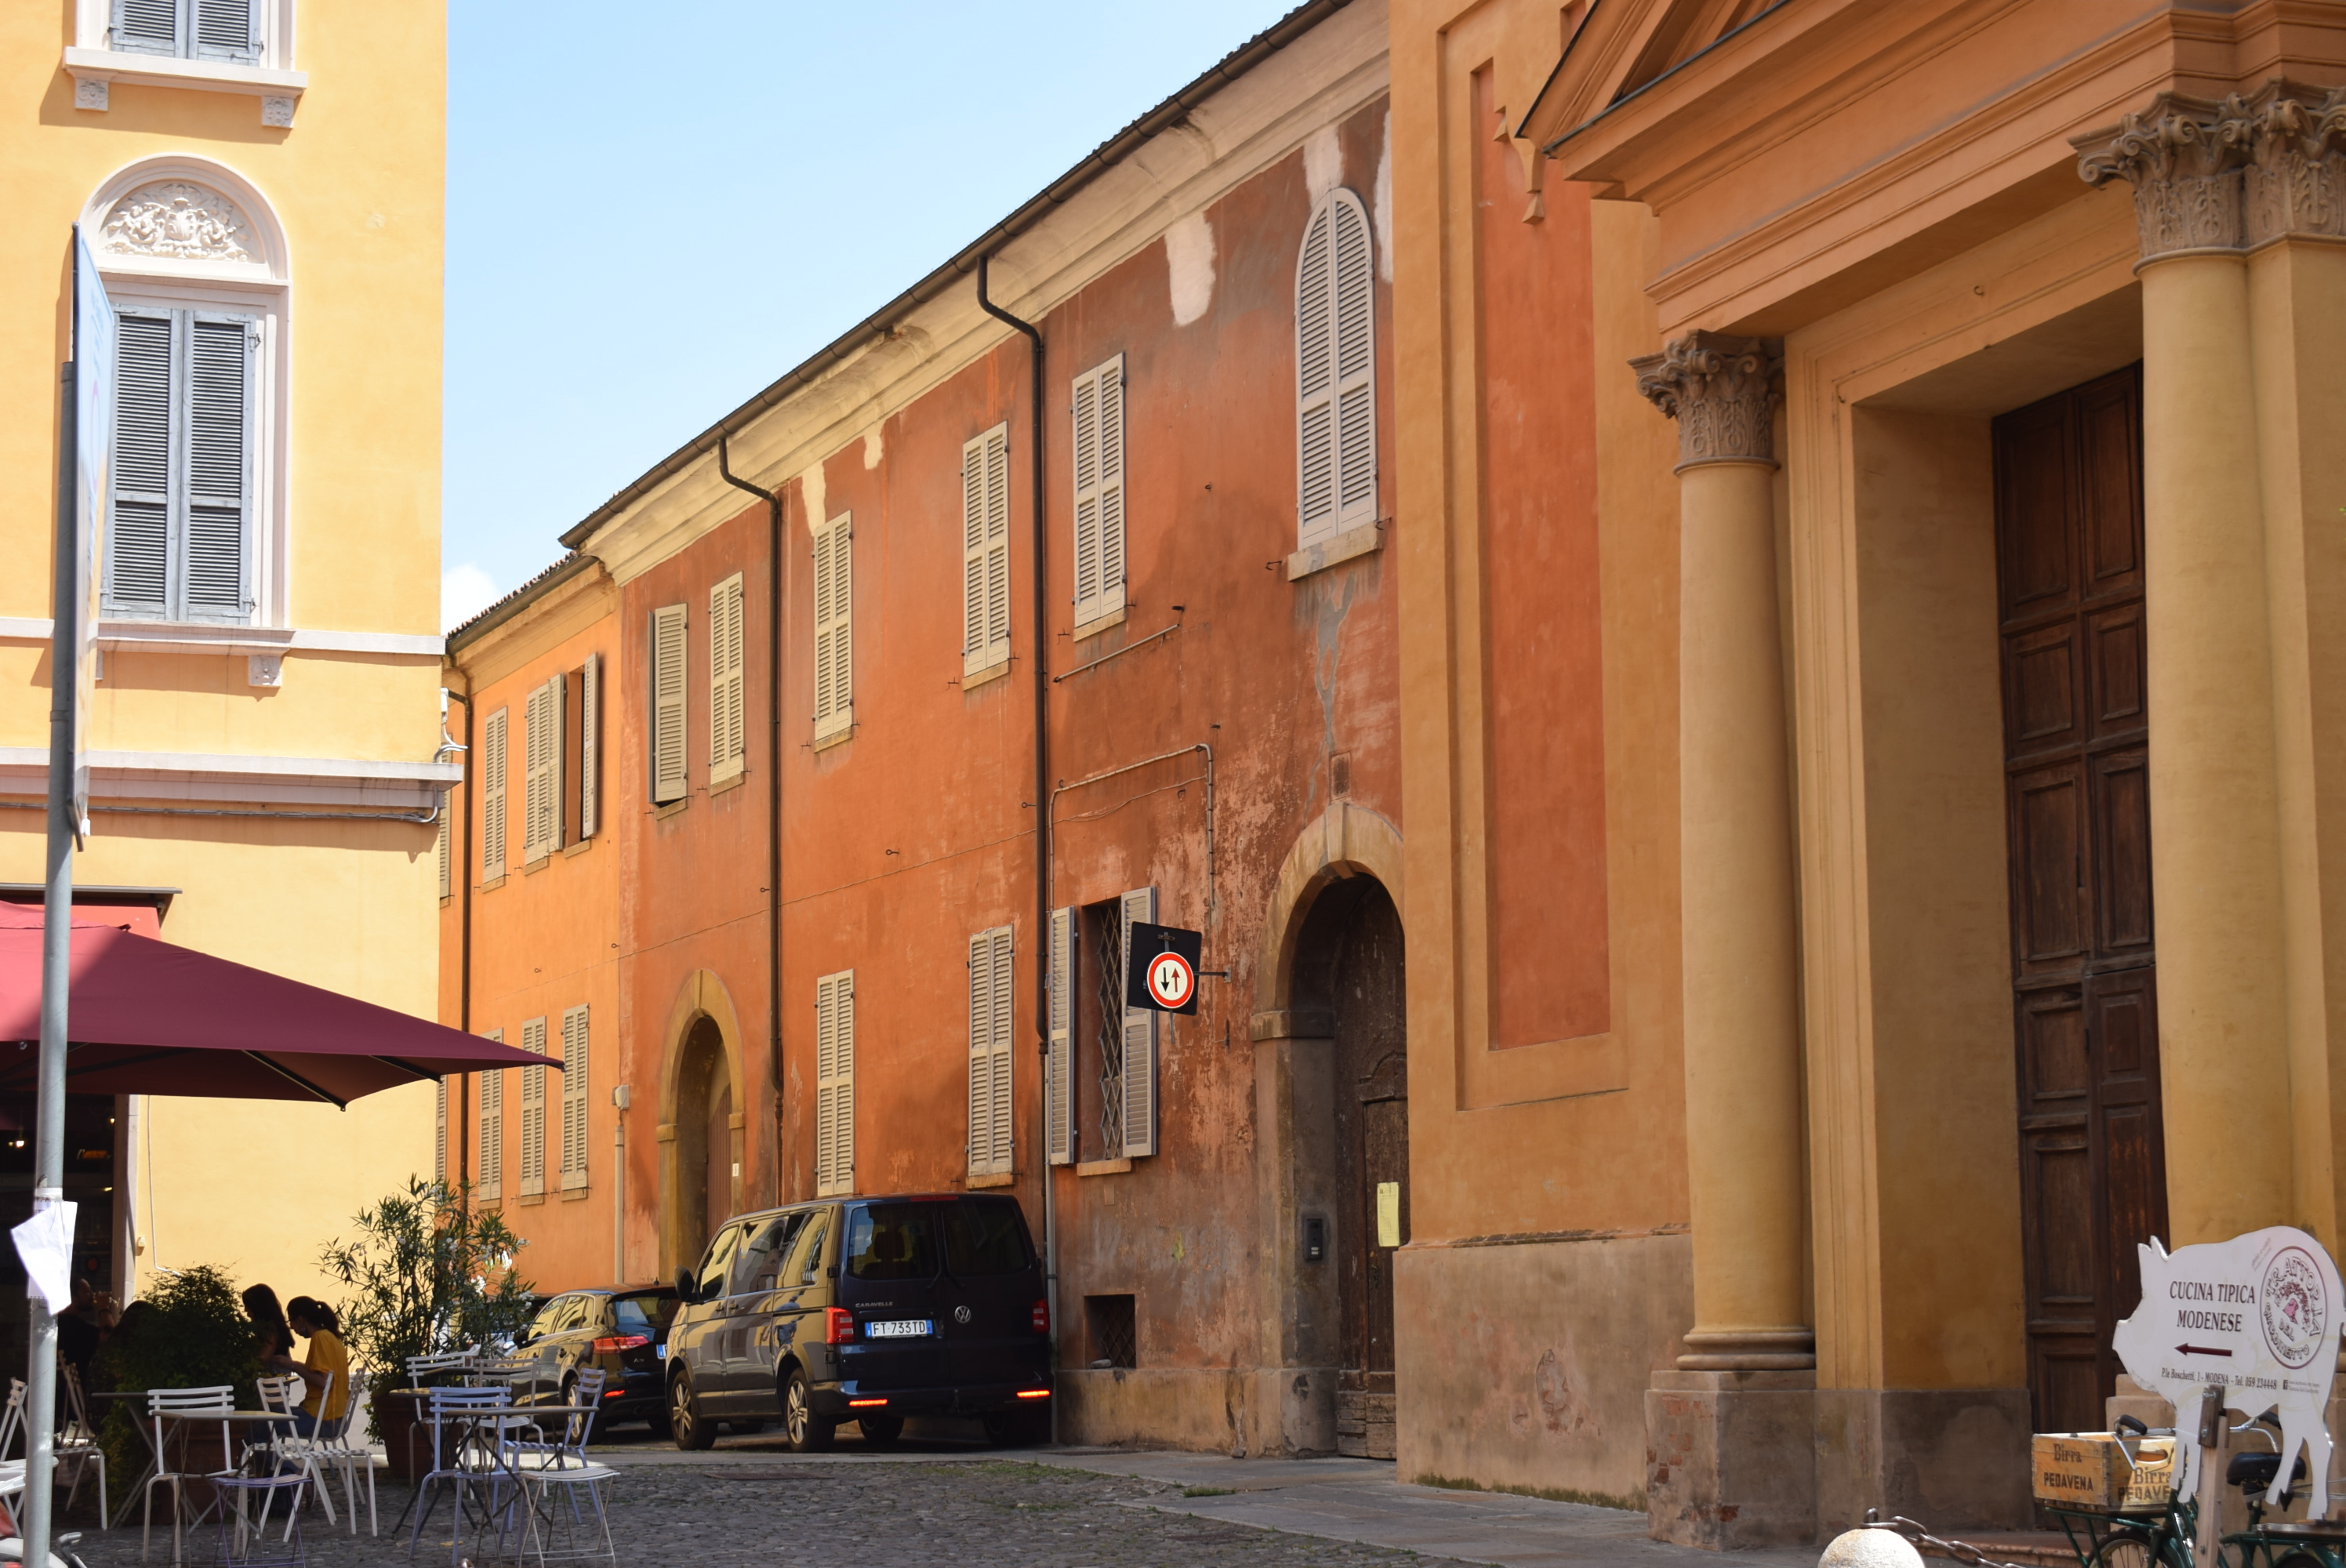 Chiostro del monastero di San Biagio (chiostro, monastico) - Modena (MO) 